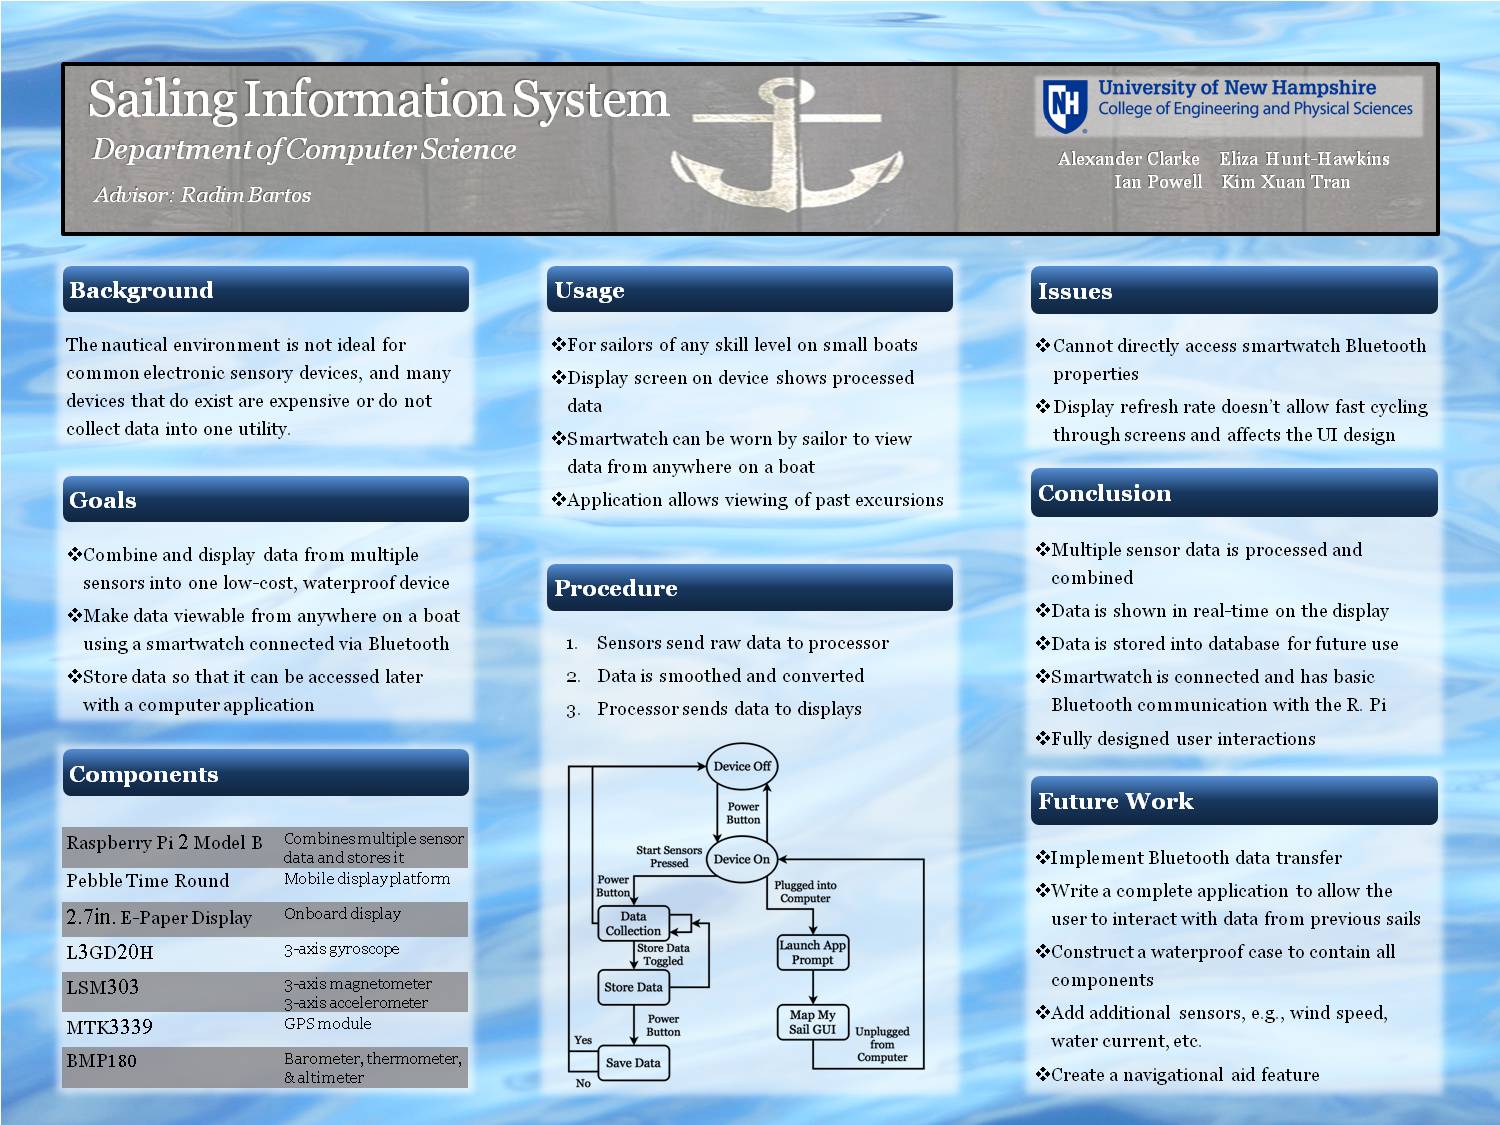 Sailing Information System by ehunthawk